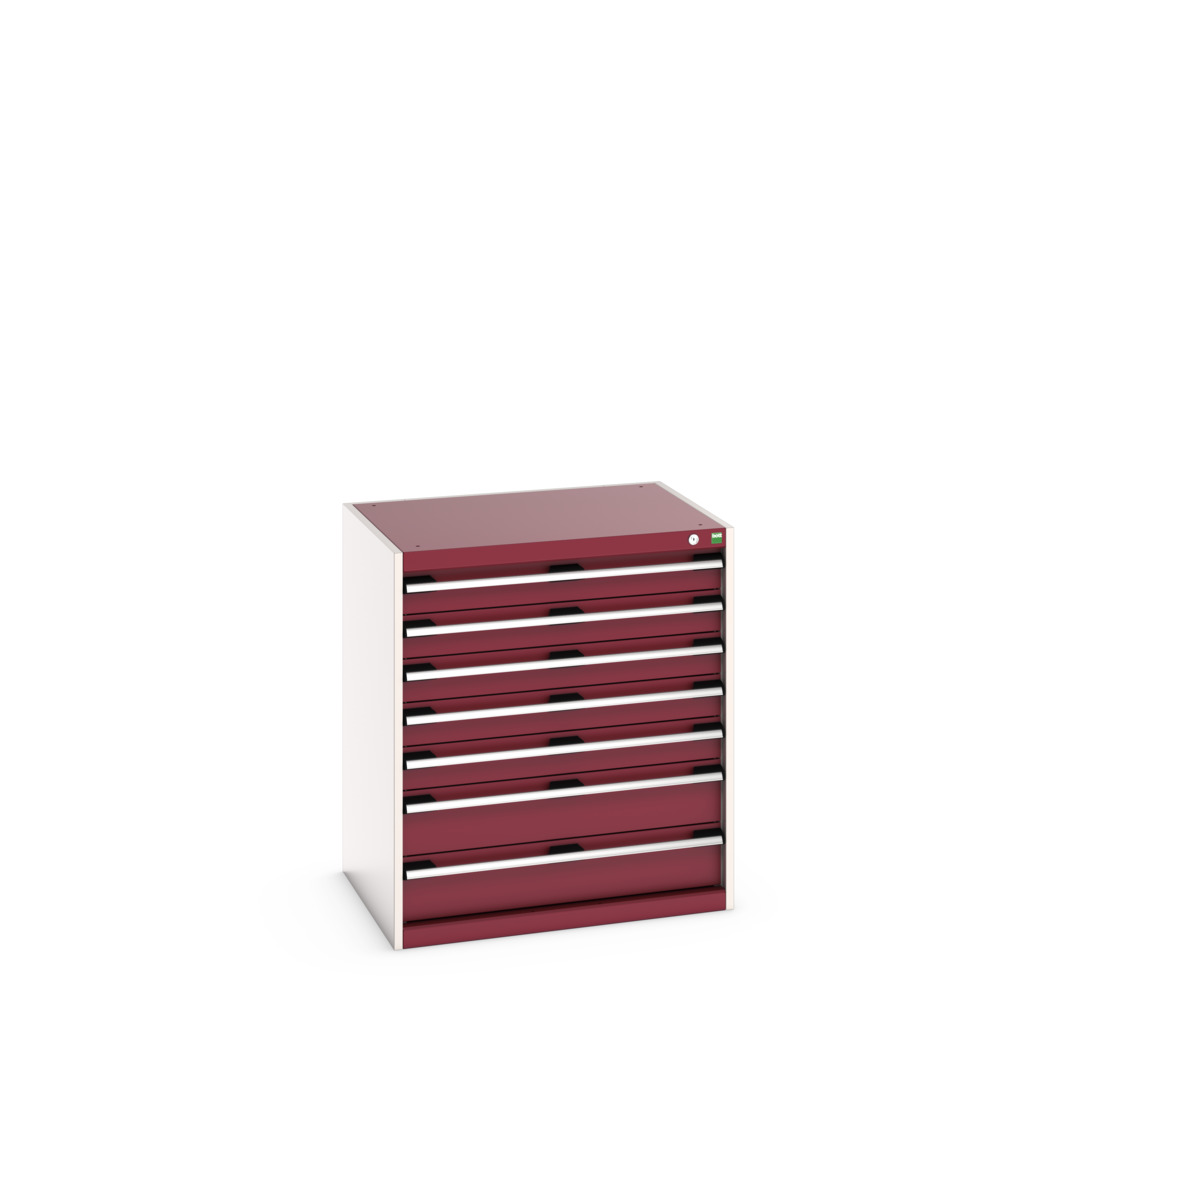 40020042.24V - cubio drawer cabinet